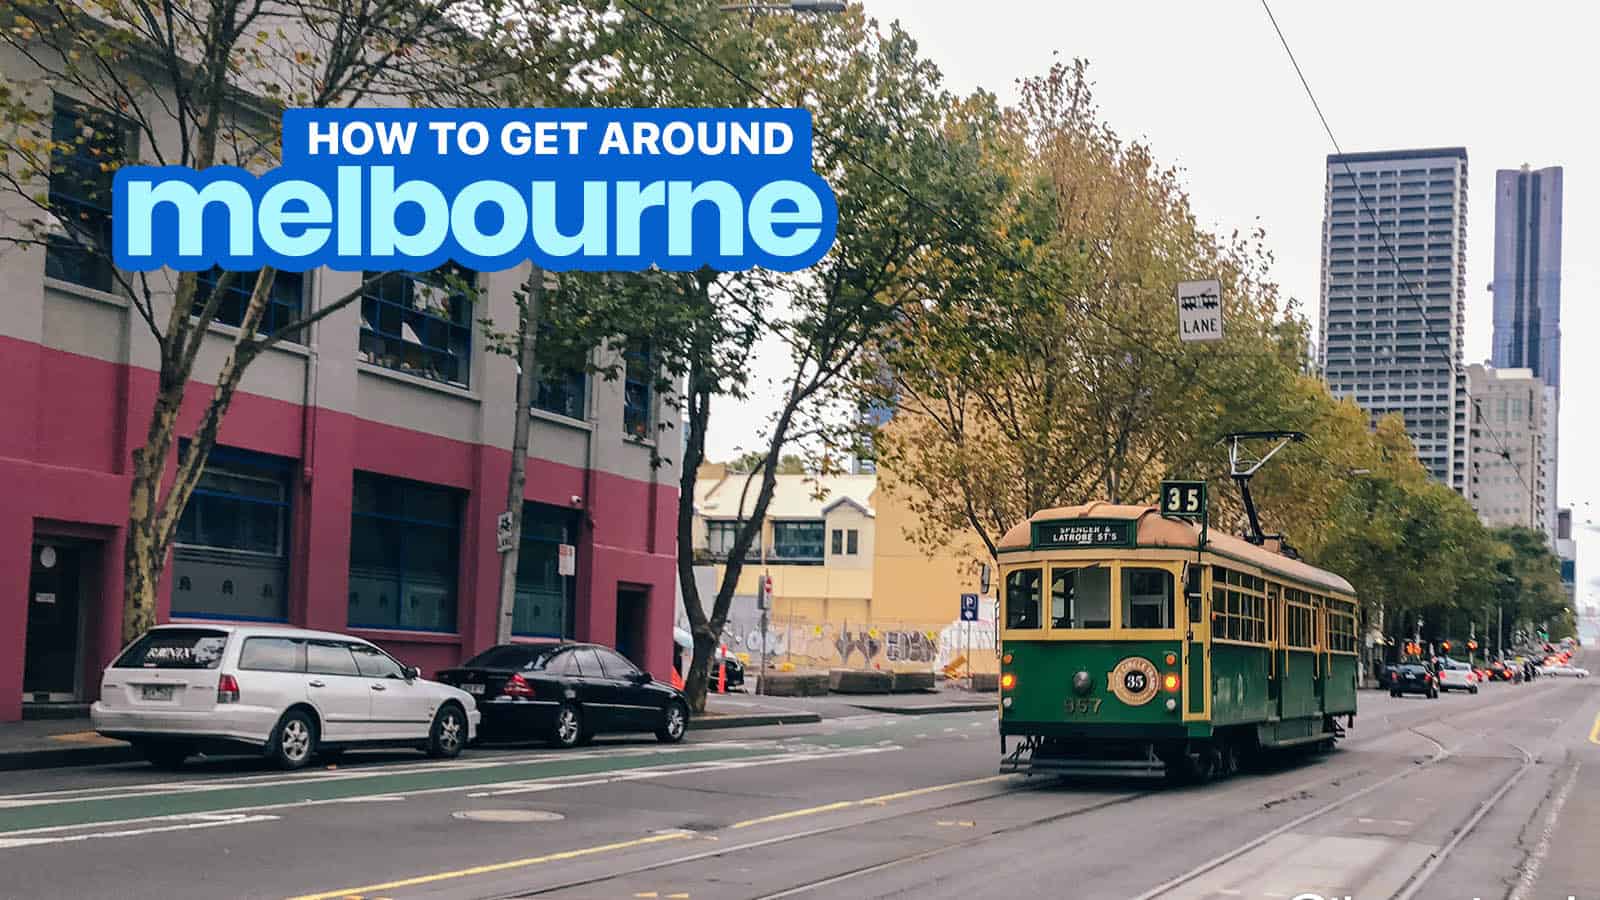 墨尔本旅游:如何使用Myki卡+电车，火车，公共汽车